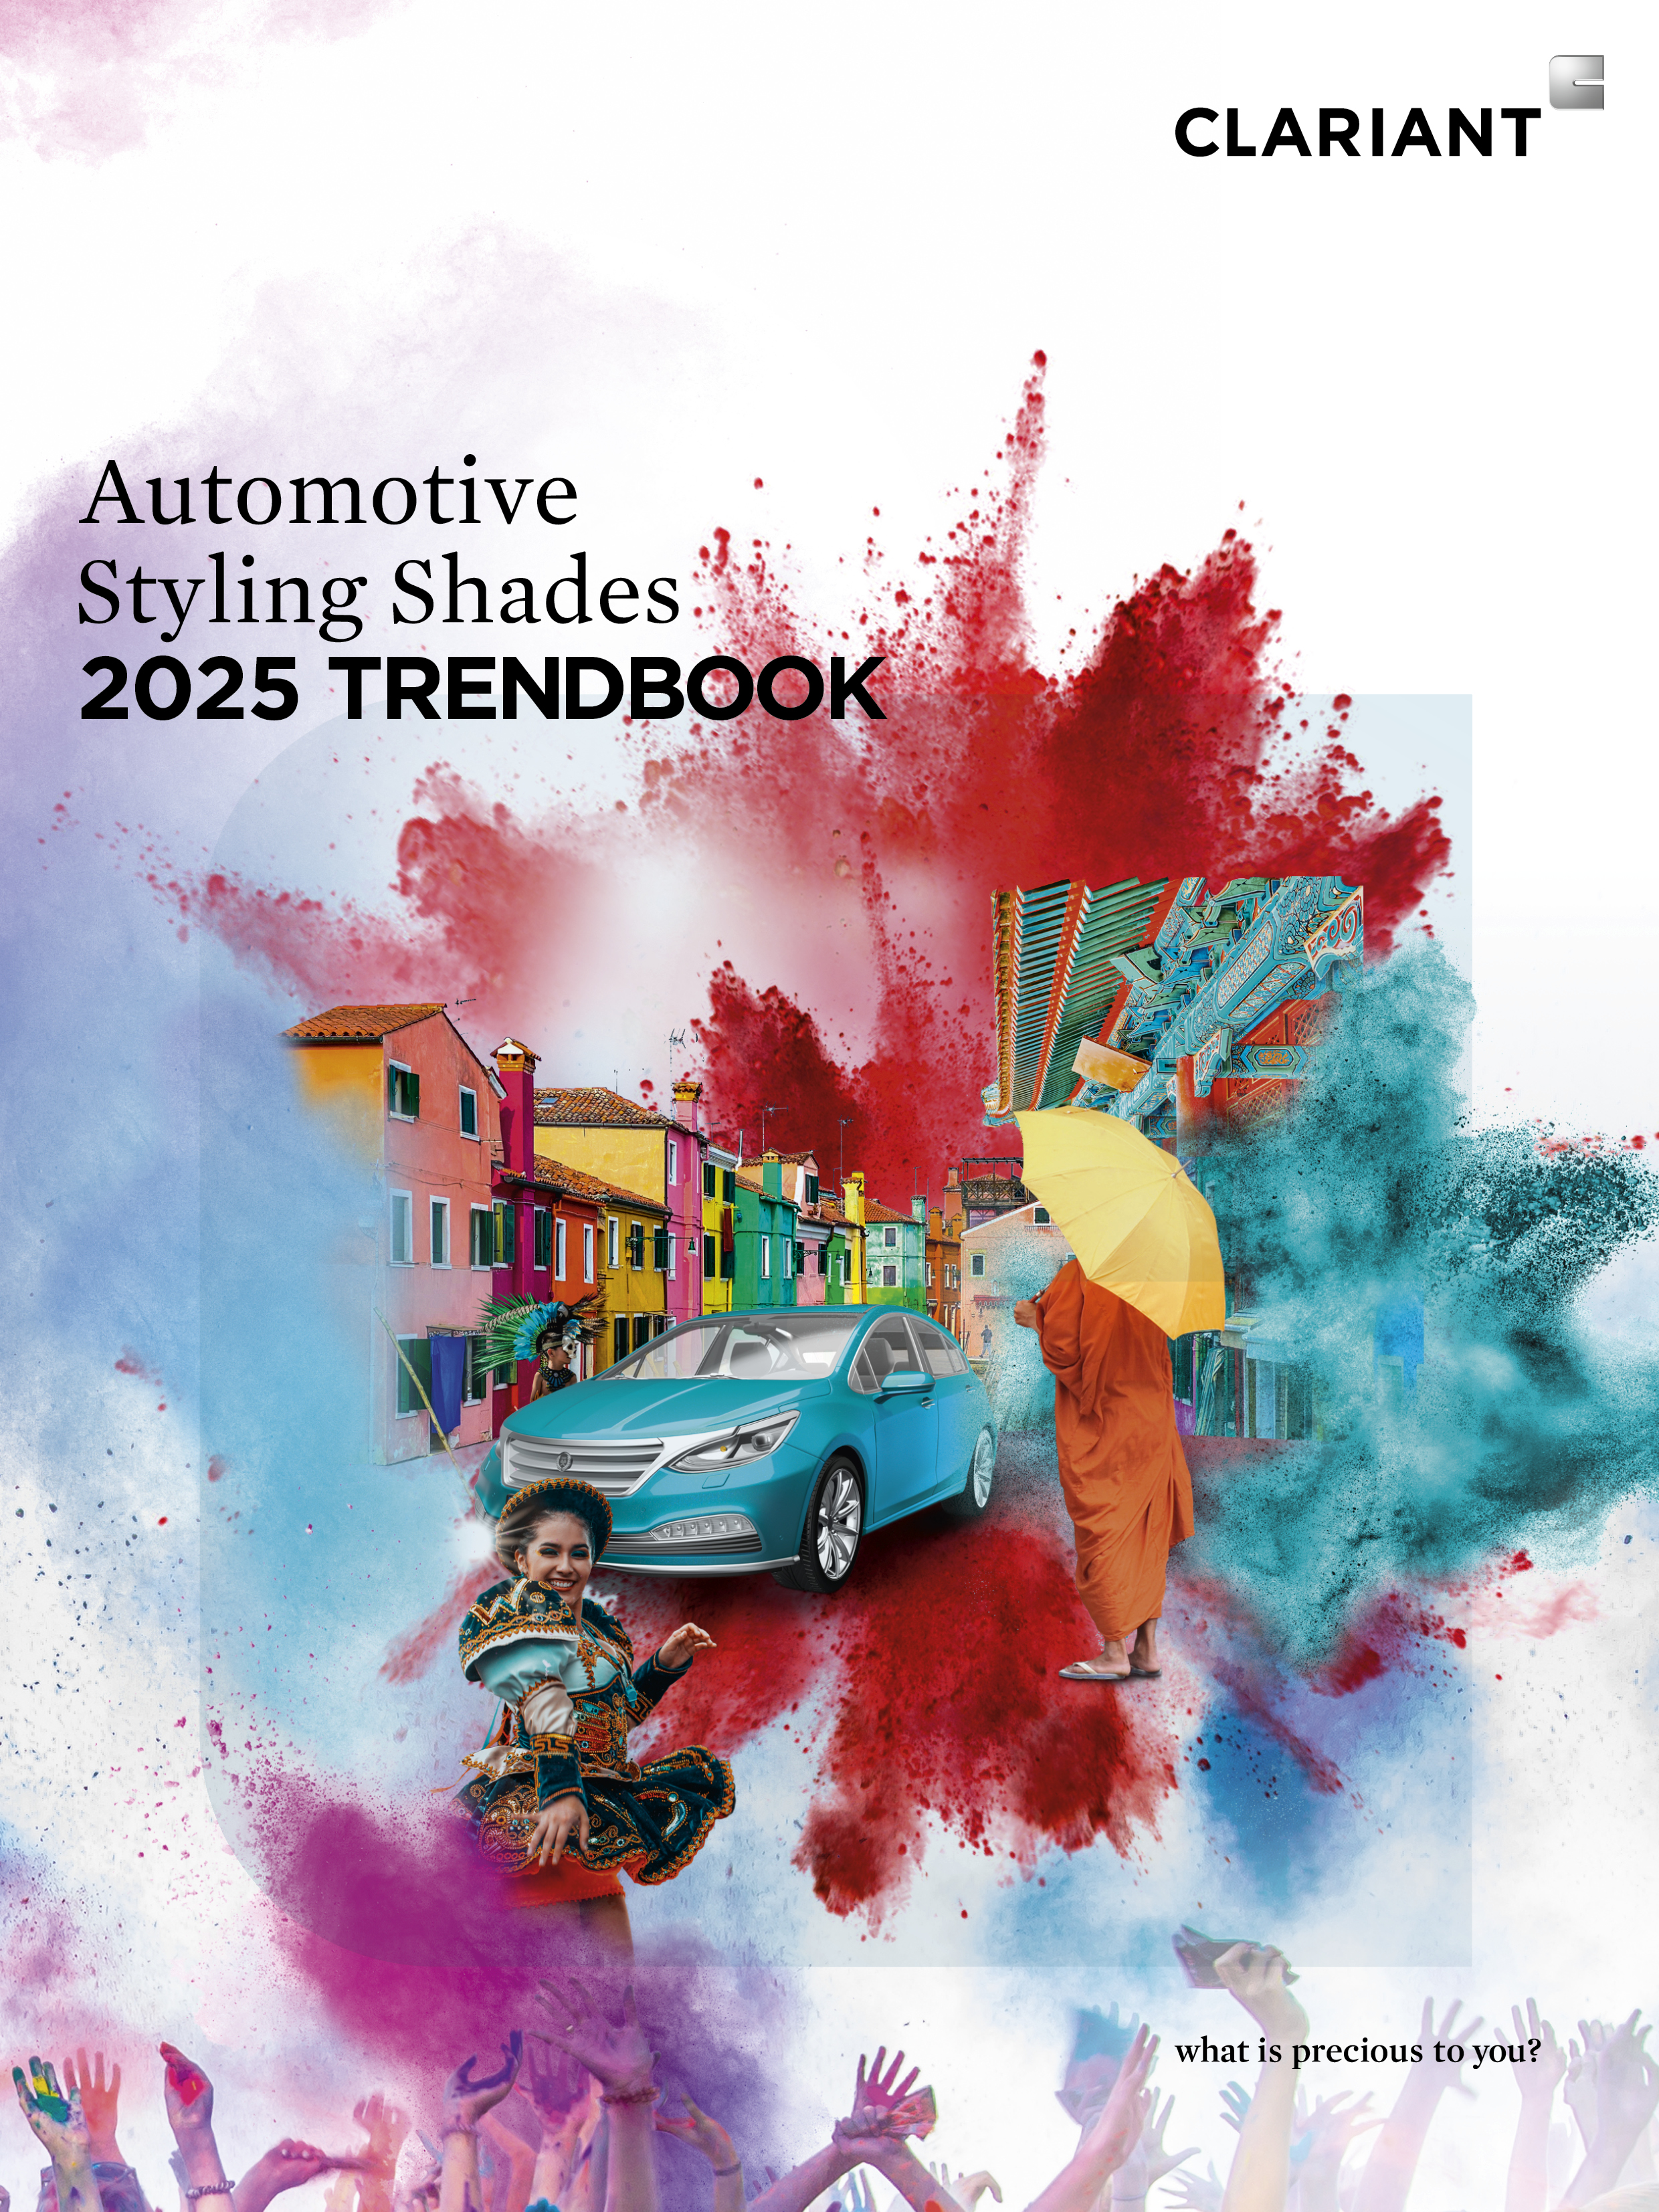 Portada del nuevo Automotive Styling Shades 2025 Trendbook de Clariant. 
(Fotografía: Clariant)